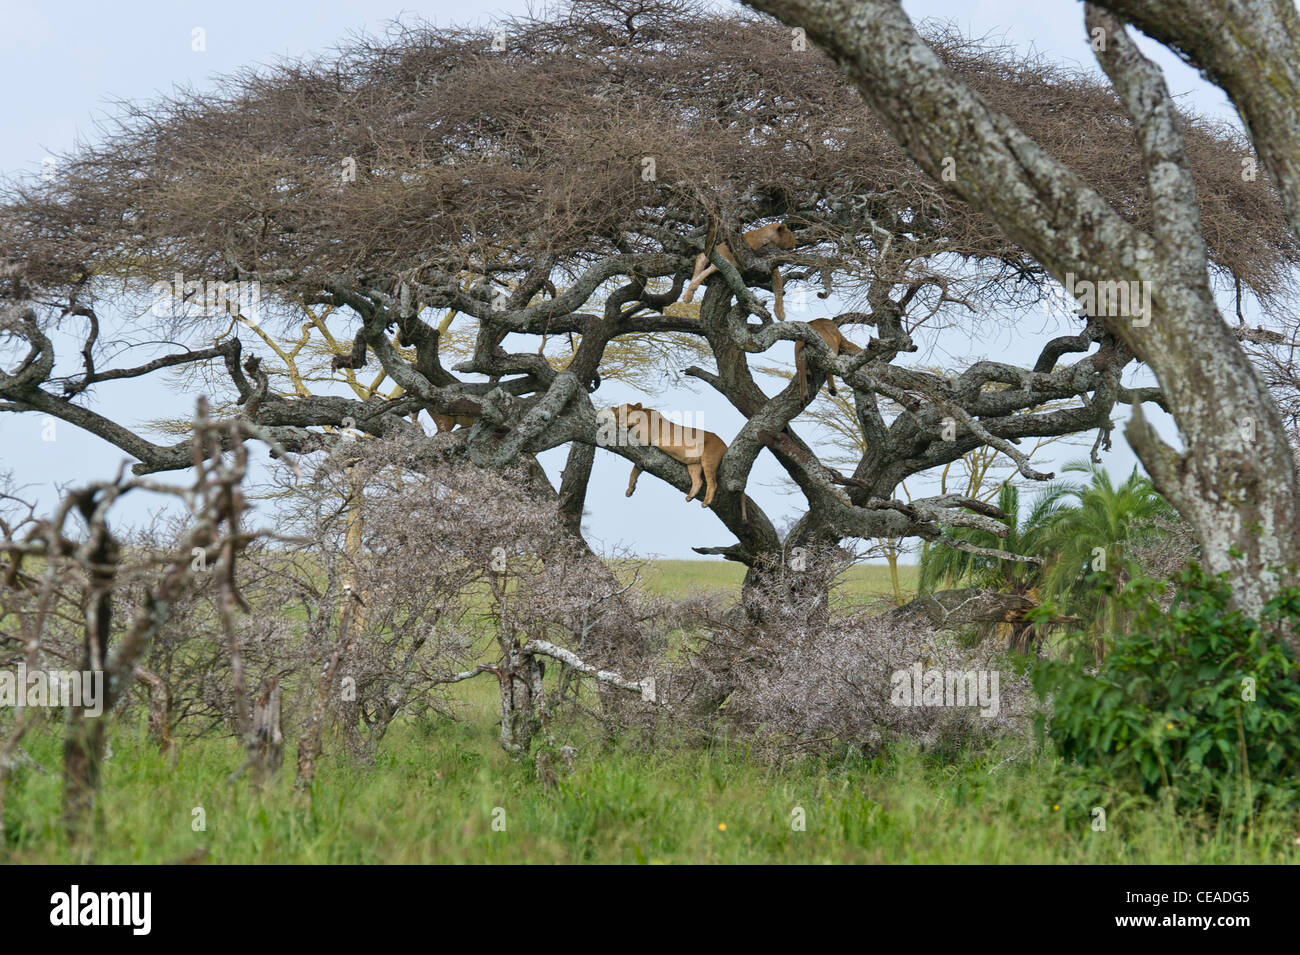 Group of lions Panthera leo resting in a Acacia tree at Seronera in Serengeti, Tanzania Stock Photo